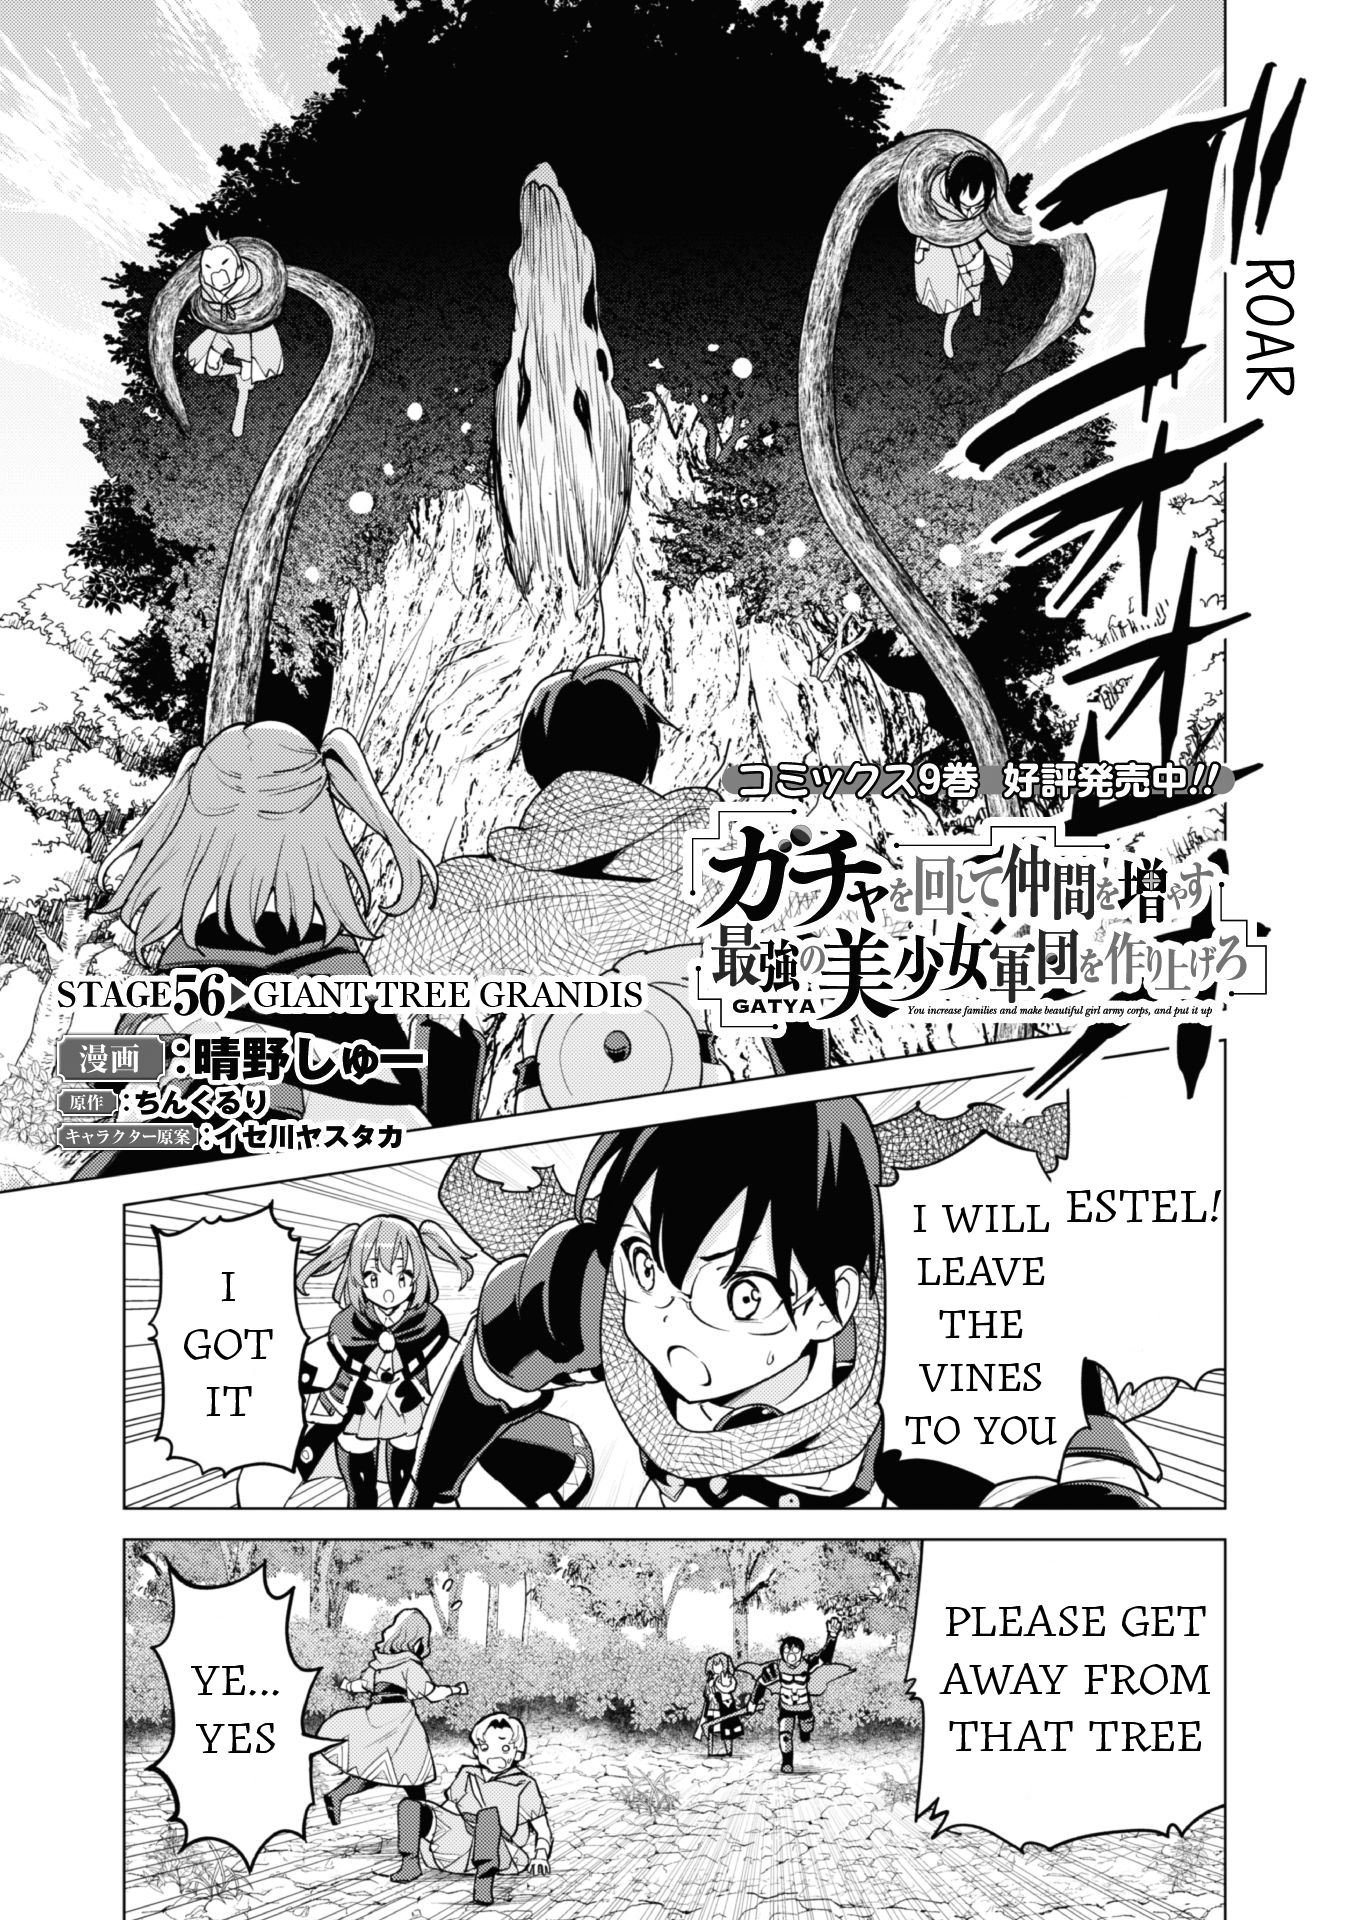 Gacha Wo Mawashite Nakama Wo Fuyasu: Saikyou No Bishoujo Gundan Wo Tsukuriagero Chapter 56: Giant Tree Grandis - Picture 2